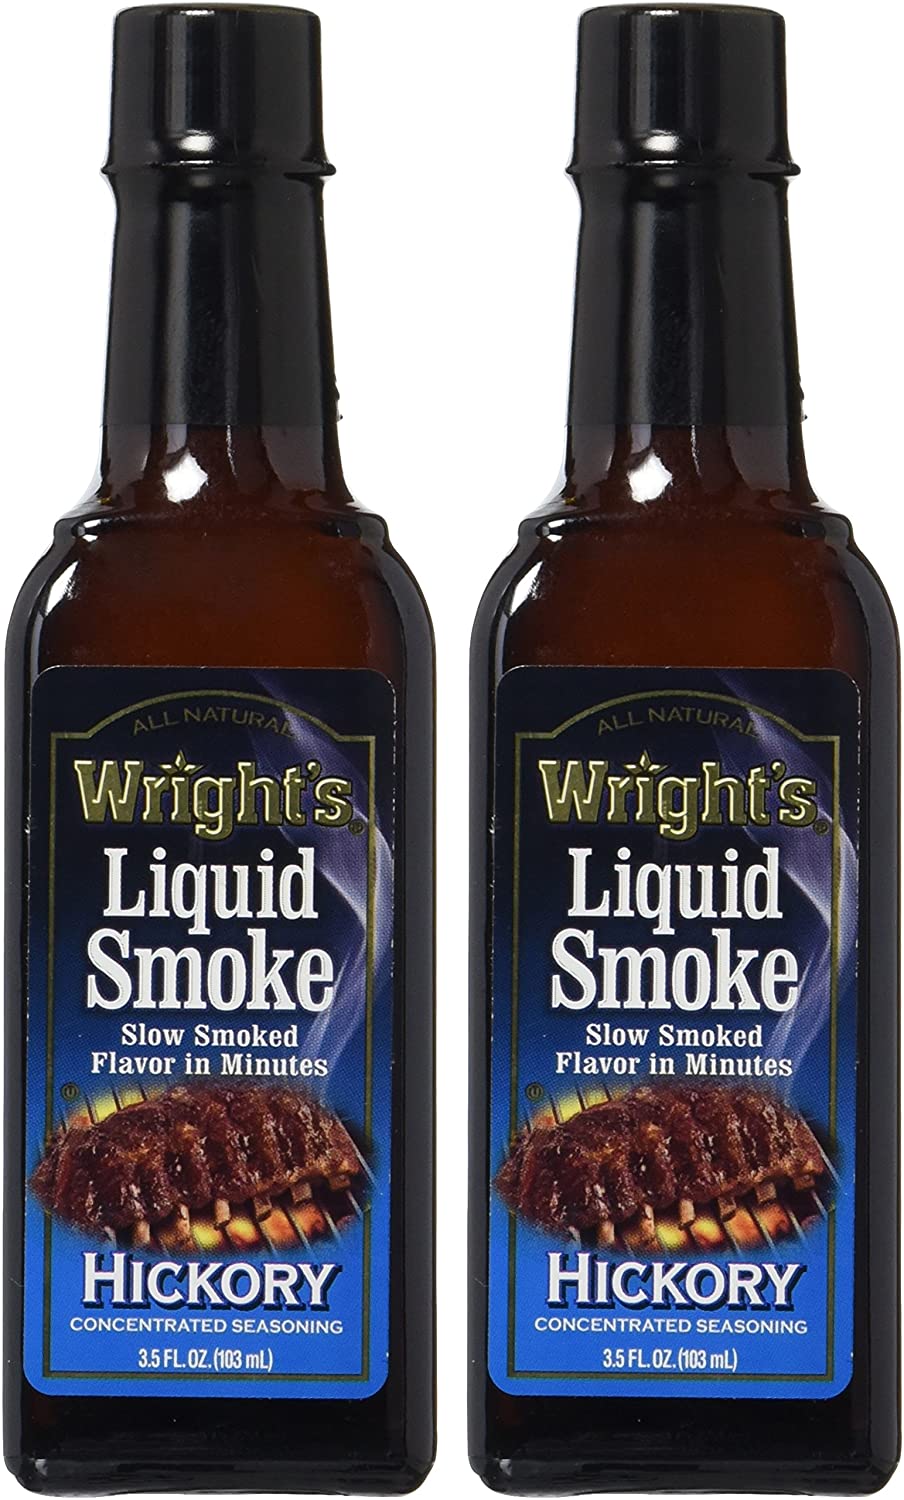 Colgin Liquid Smoke, Natural Hickory, 4-Ounce